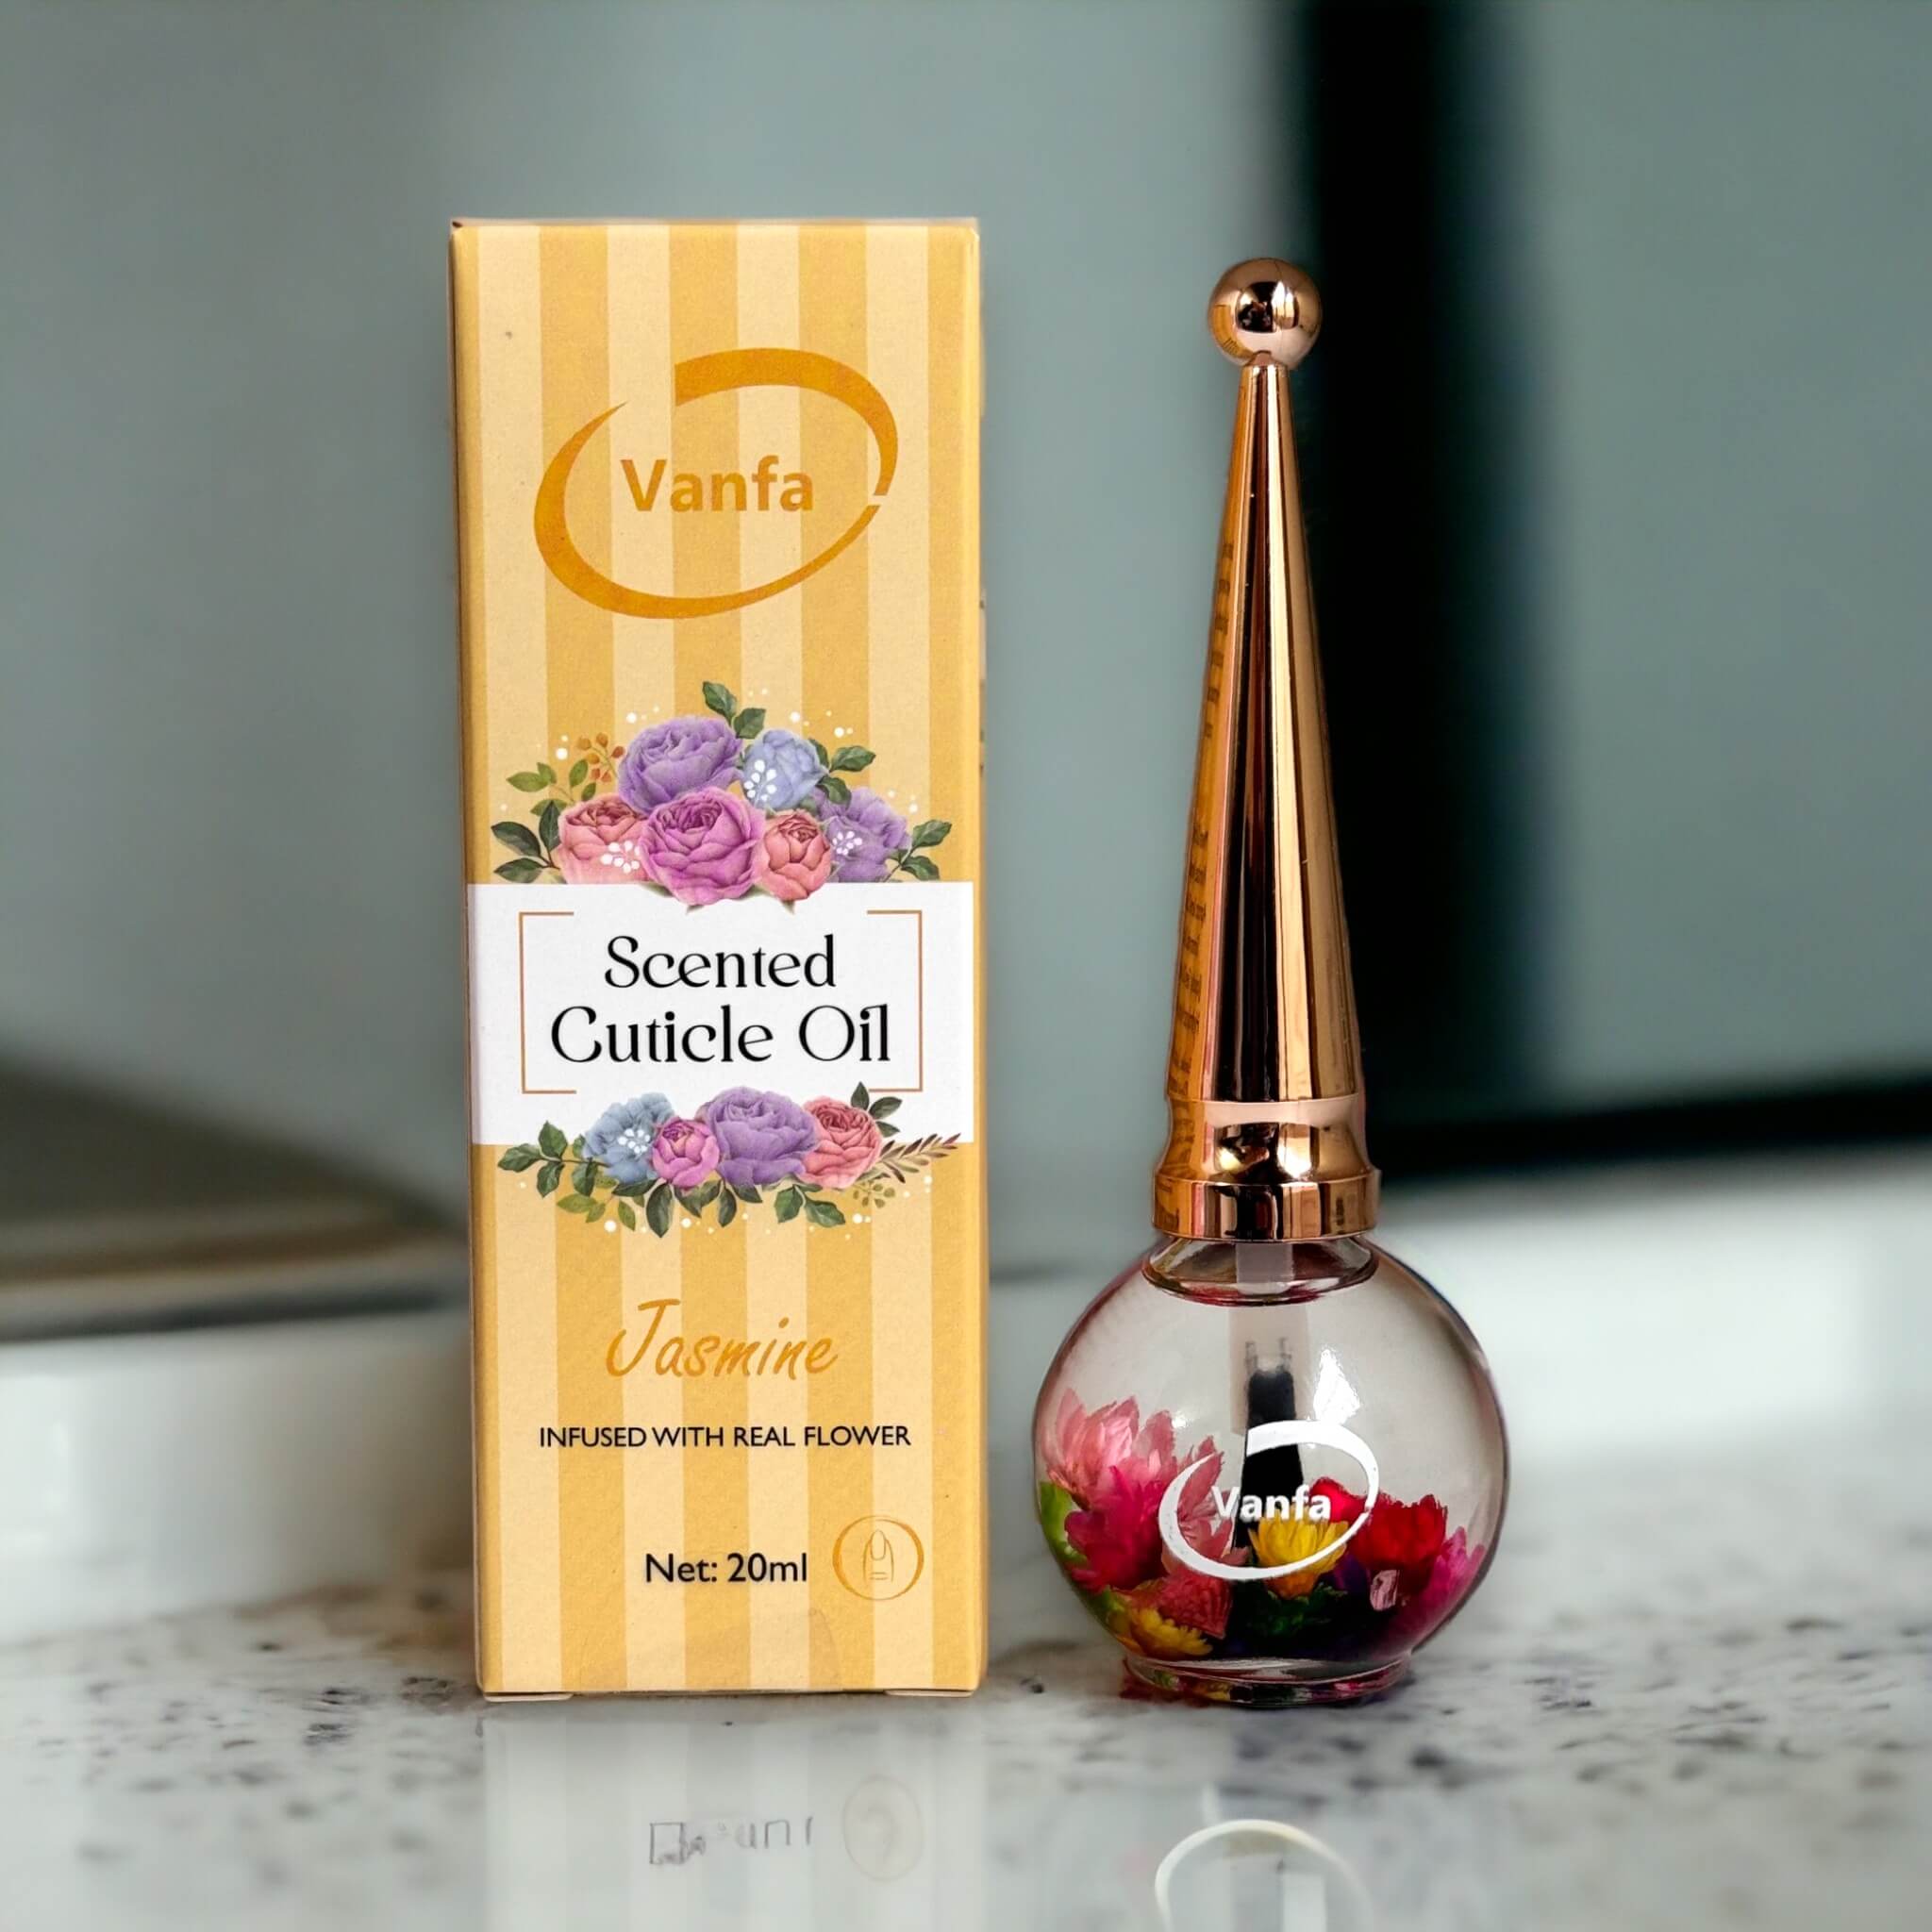 VANFA Cuticle Oil infused with real flower 0.42 Oz - Jasmine